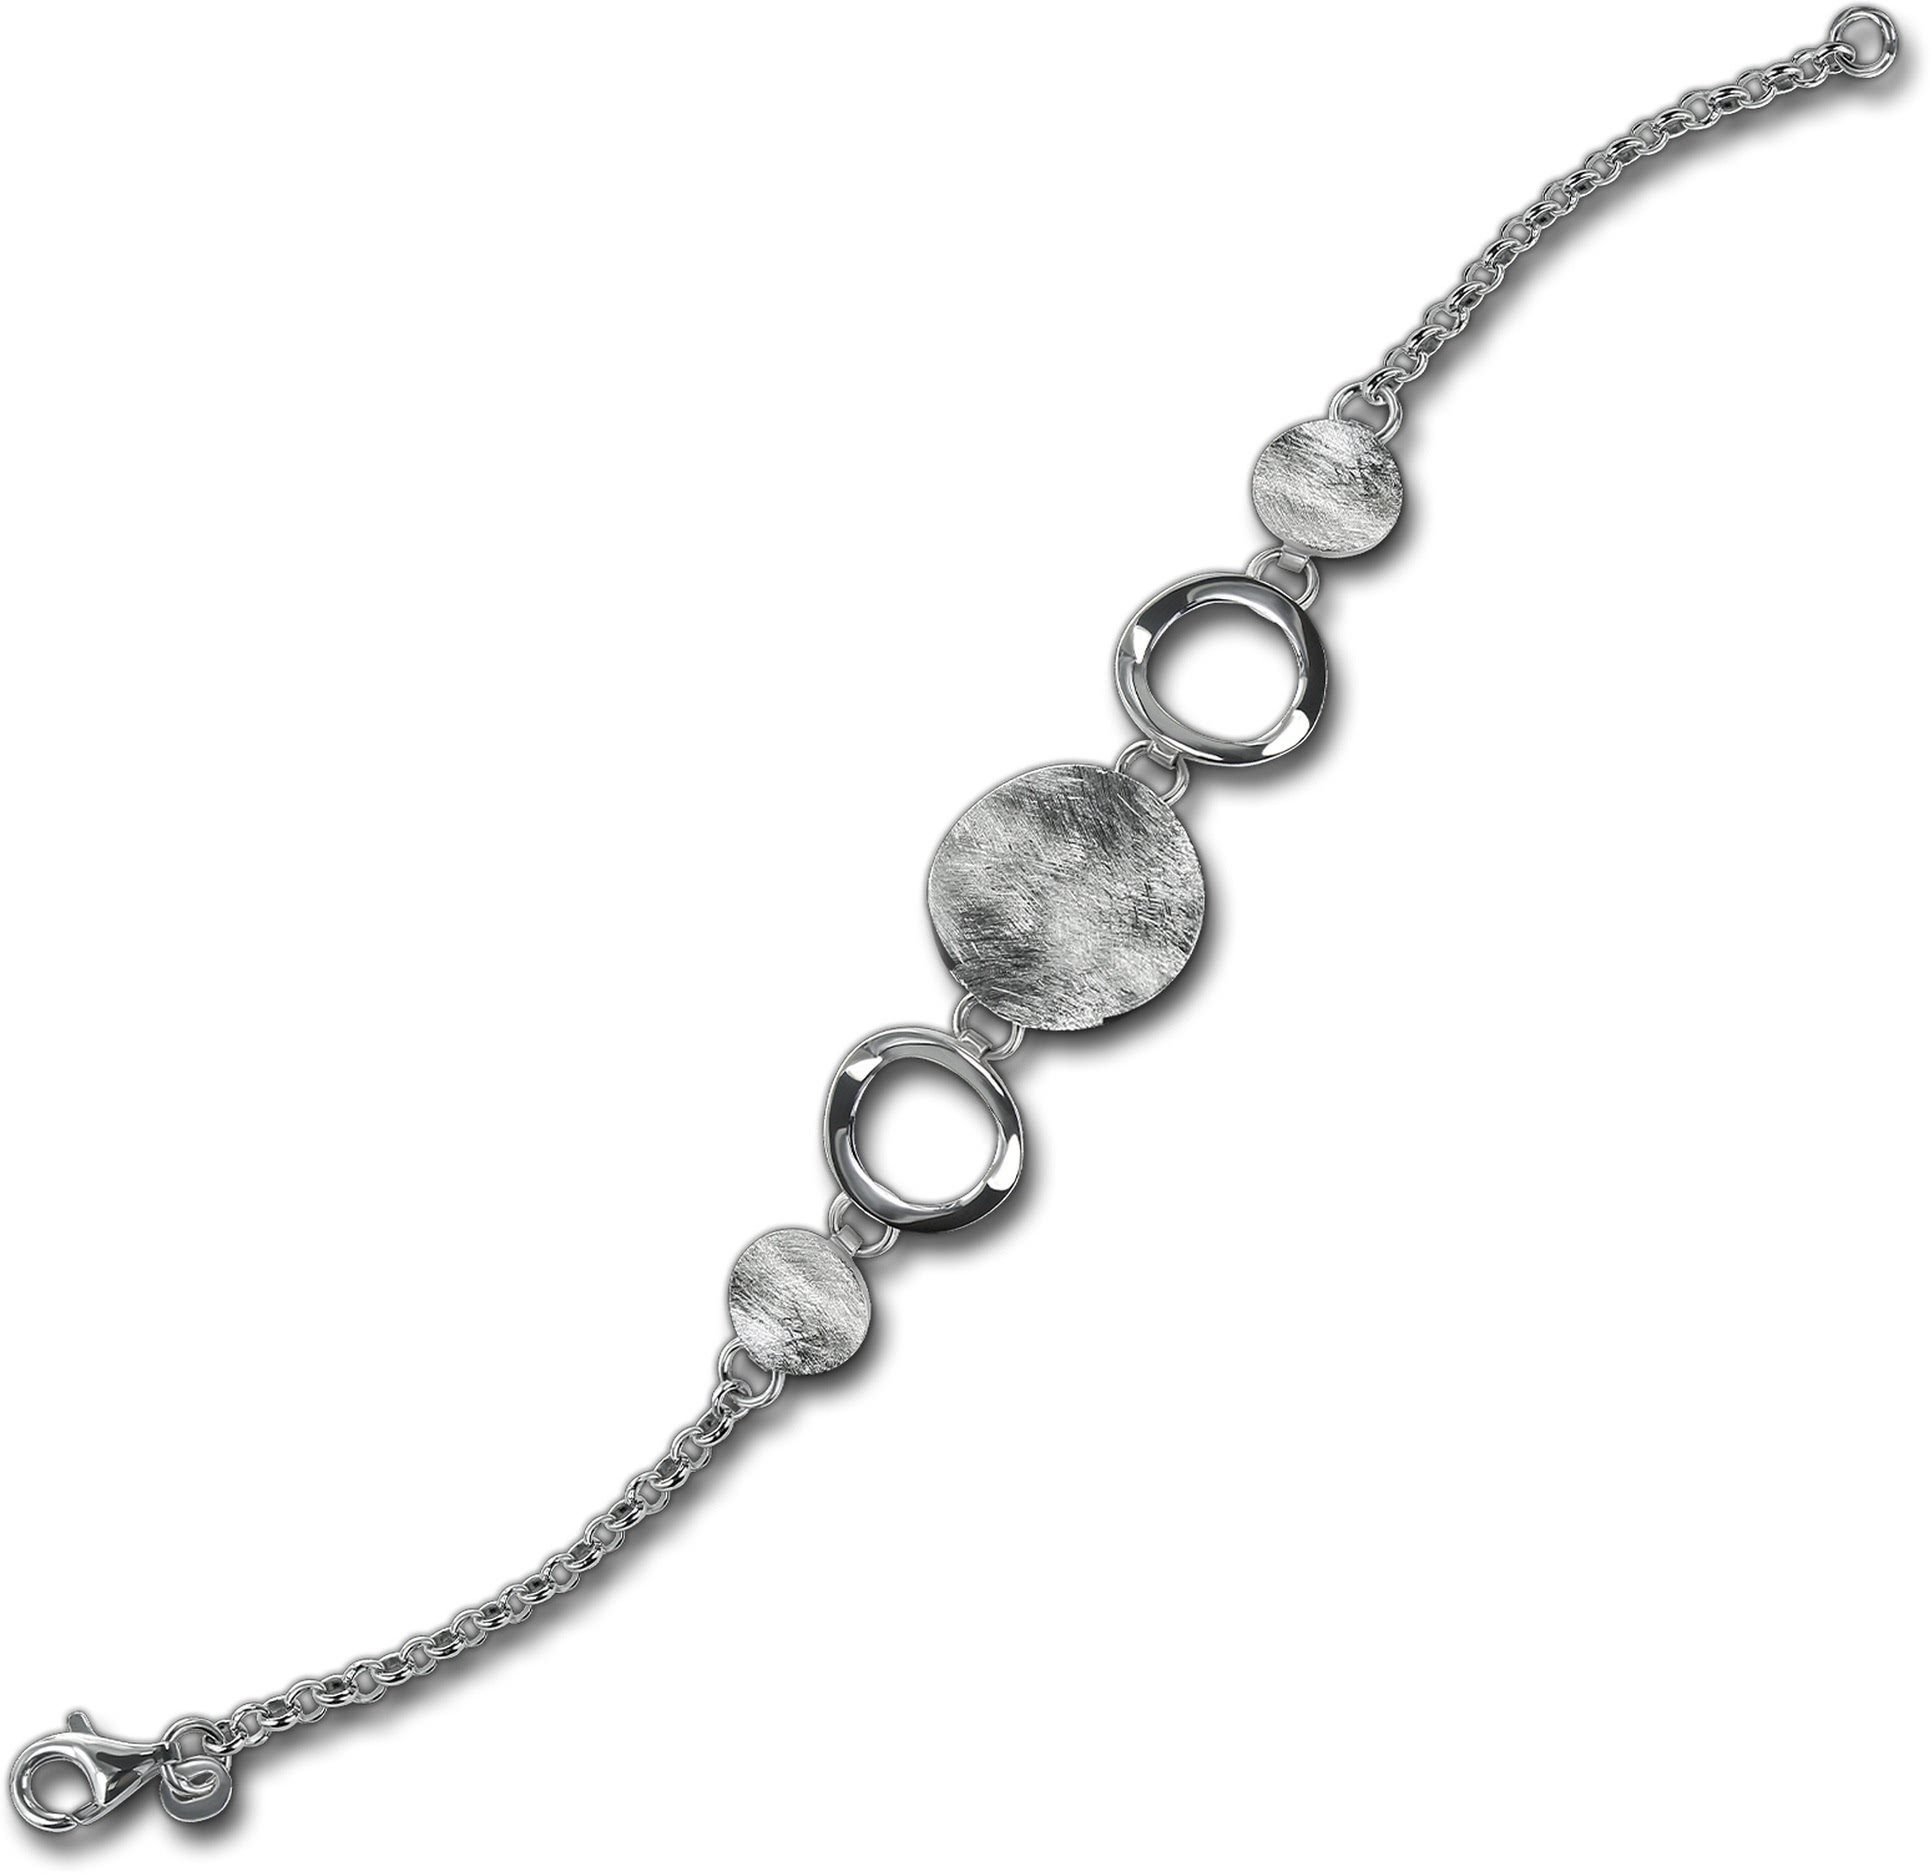 Balia Silber mattiert Silberarmband Balia Damen für (Armband), (Rund) ca. Silber Armband 18,5cm, Armband 925